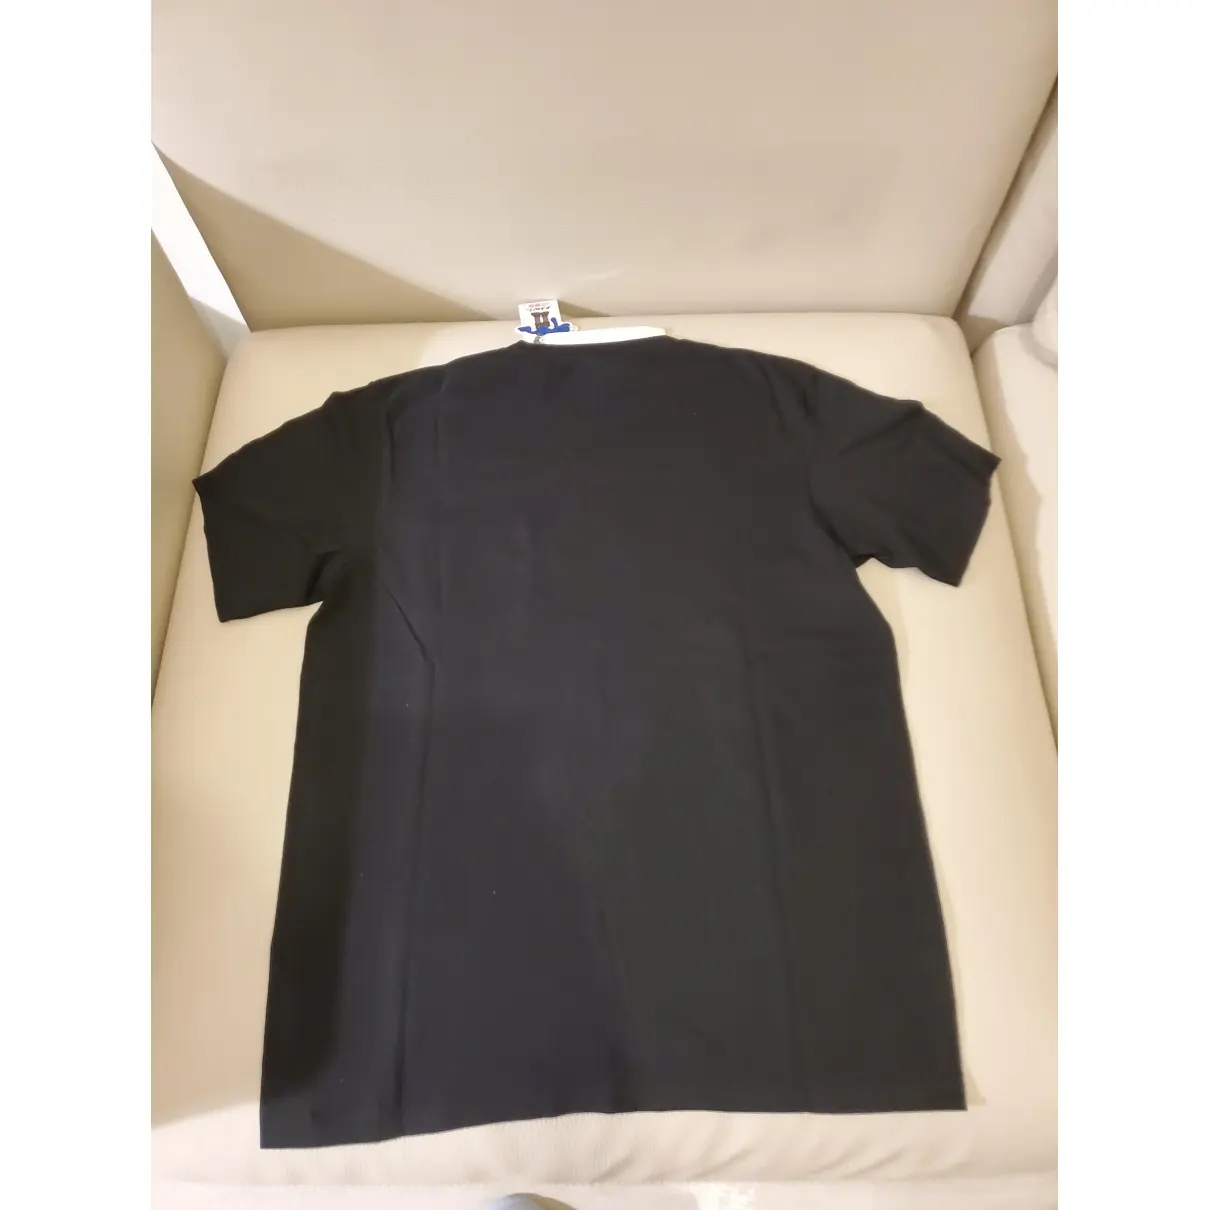 Buy Kaws x Uniqlo Black Cotton T-shirt online